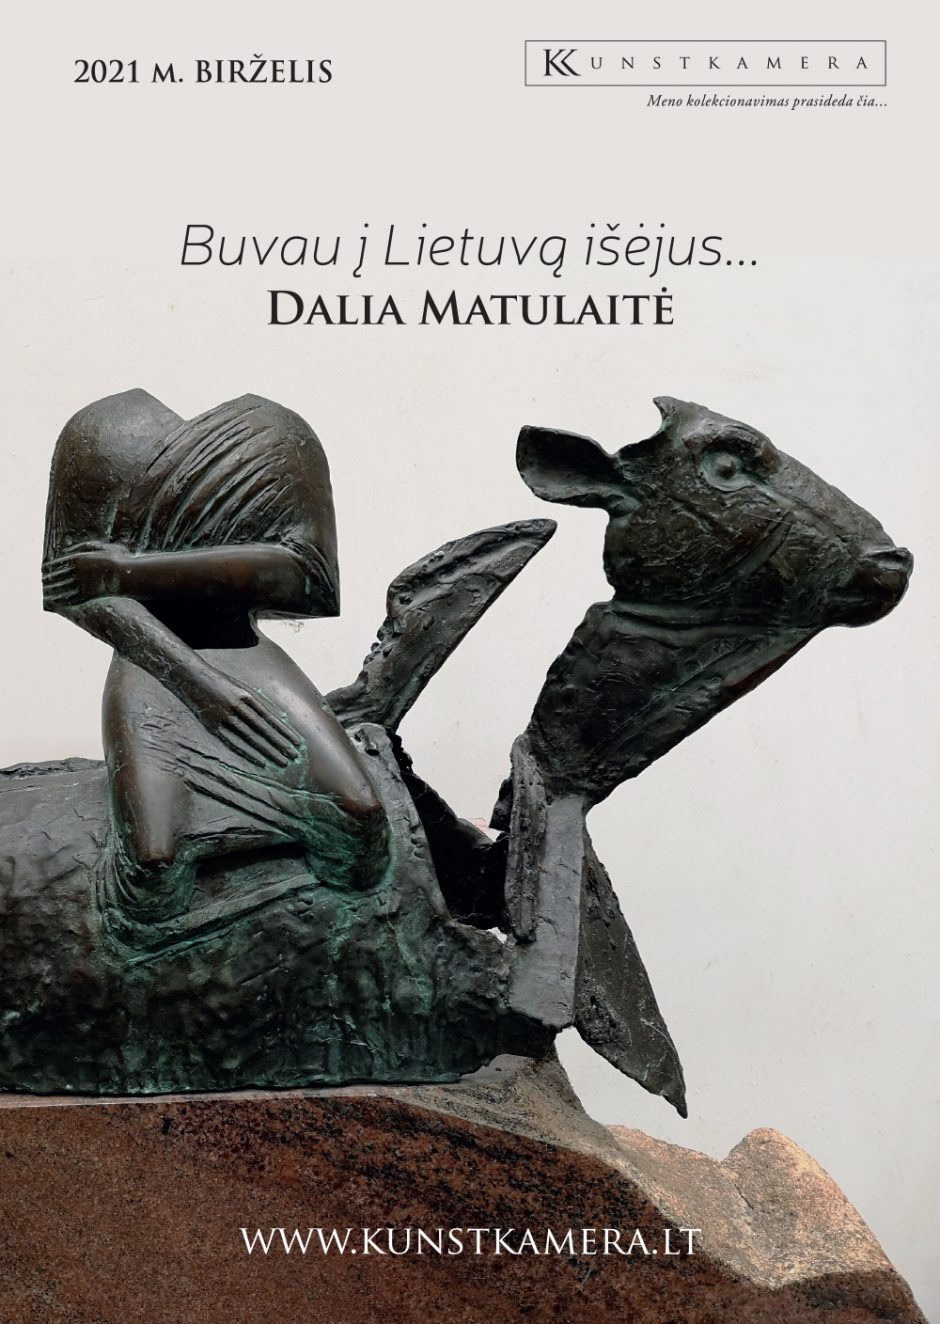 Sostinės galerijoje „Kunstkamera“ – skulptorės D. O. Matulaitės kelionė į Lietuvą